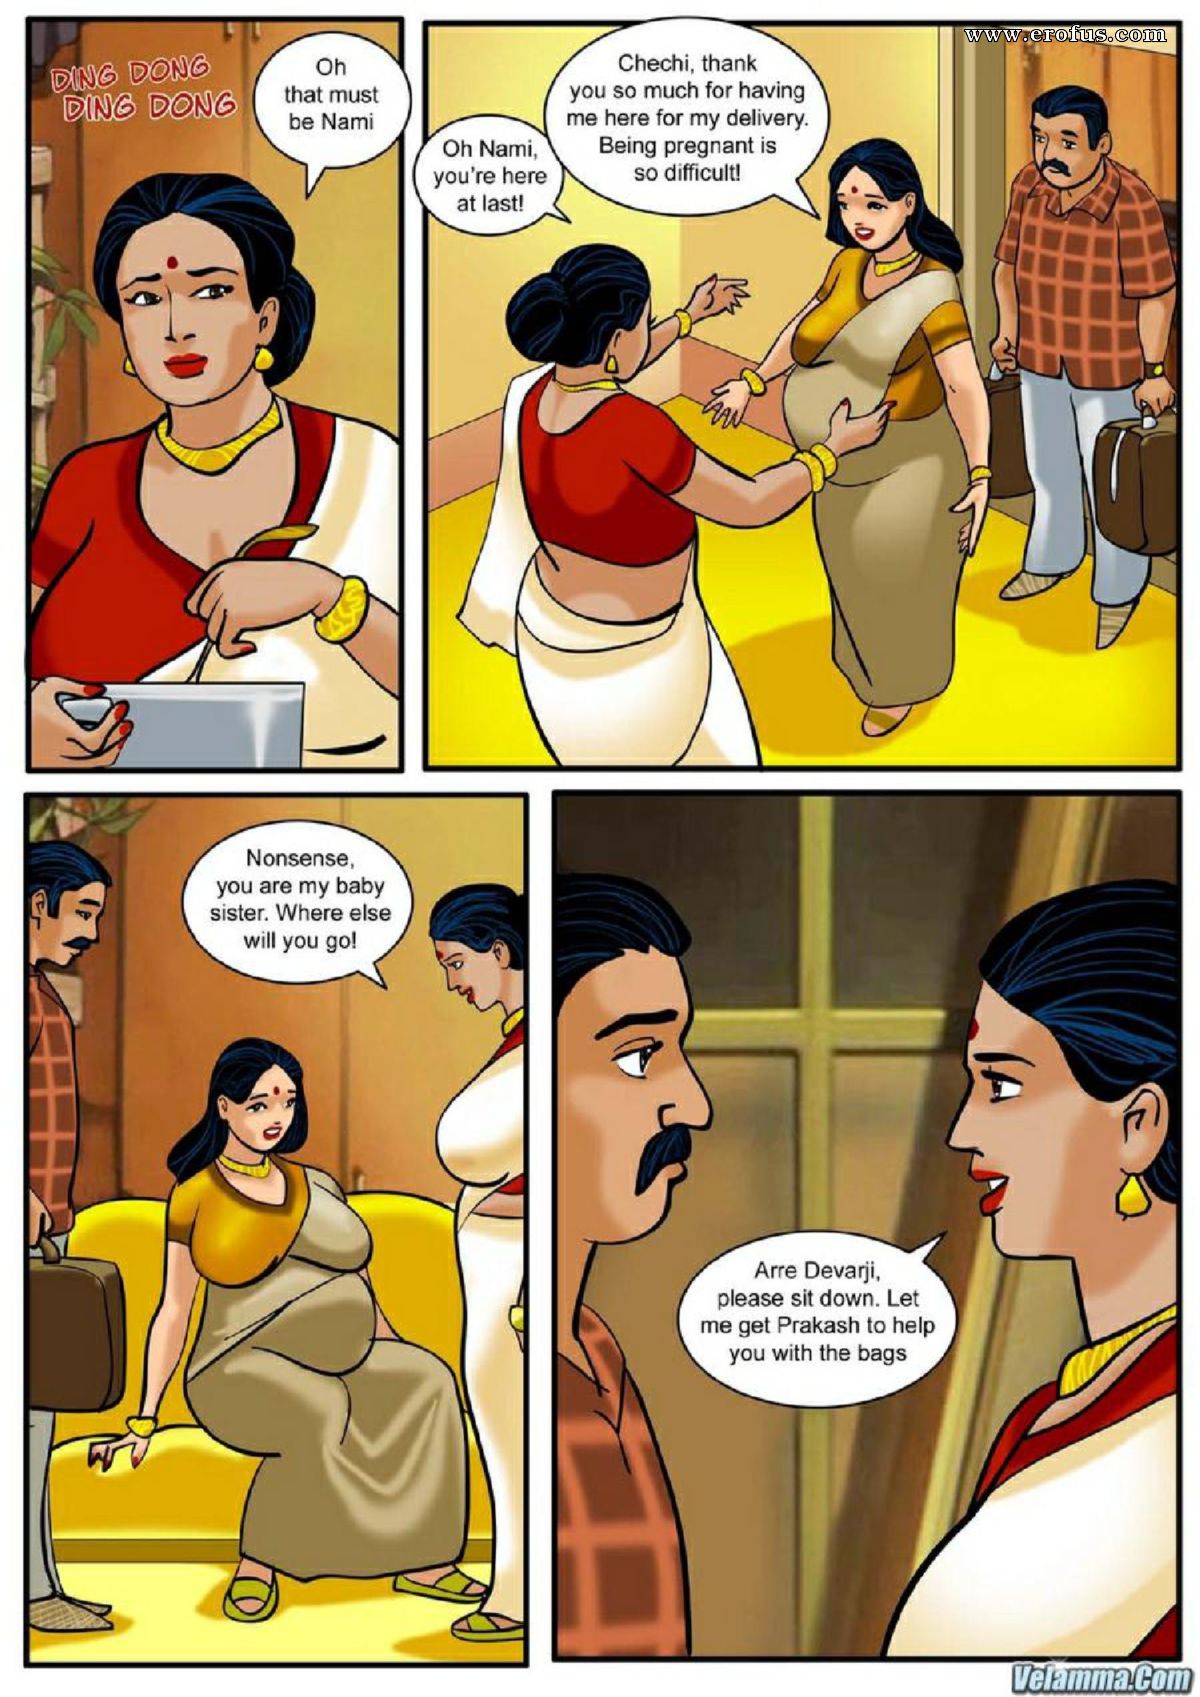 Velamal comics